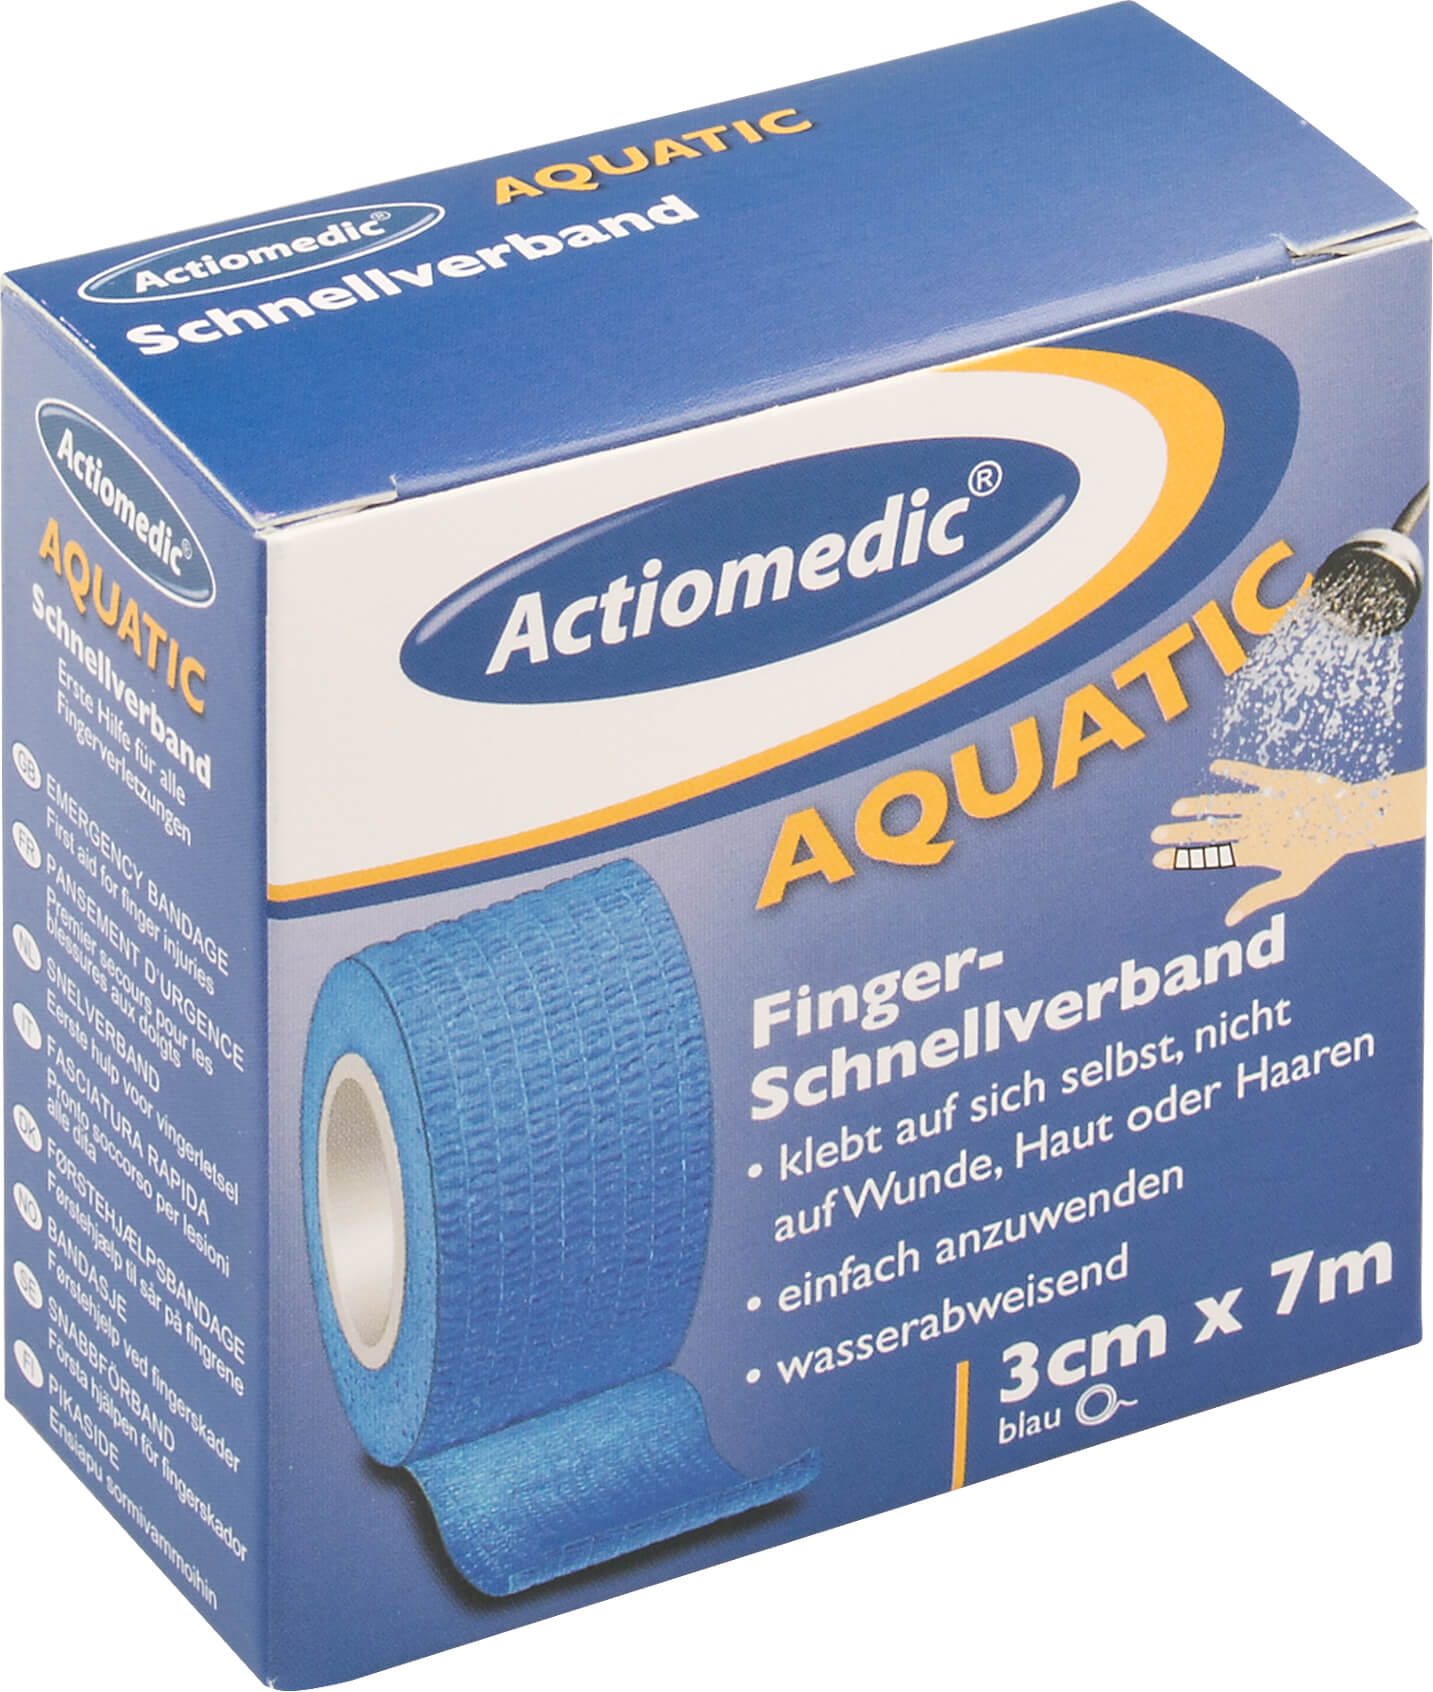 Schnellverband Aquatic, blau, Actiomedic - 3cm x 7m